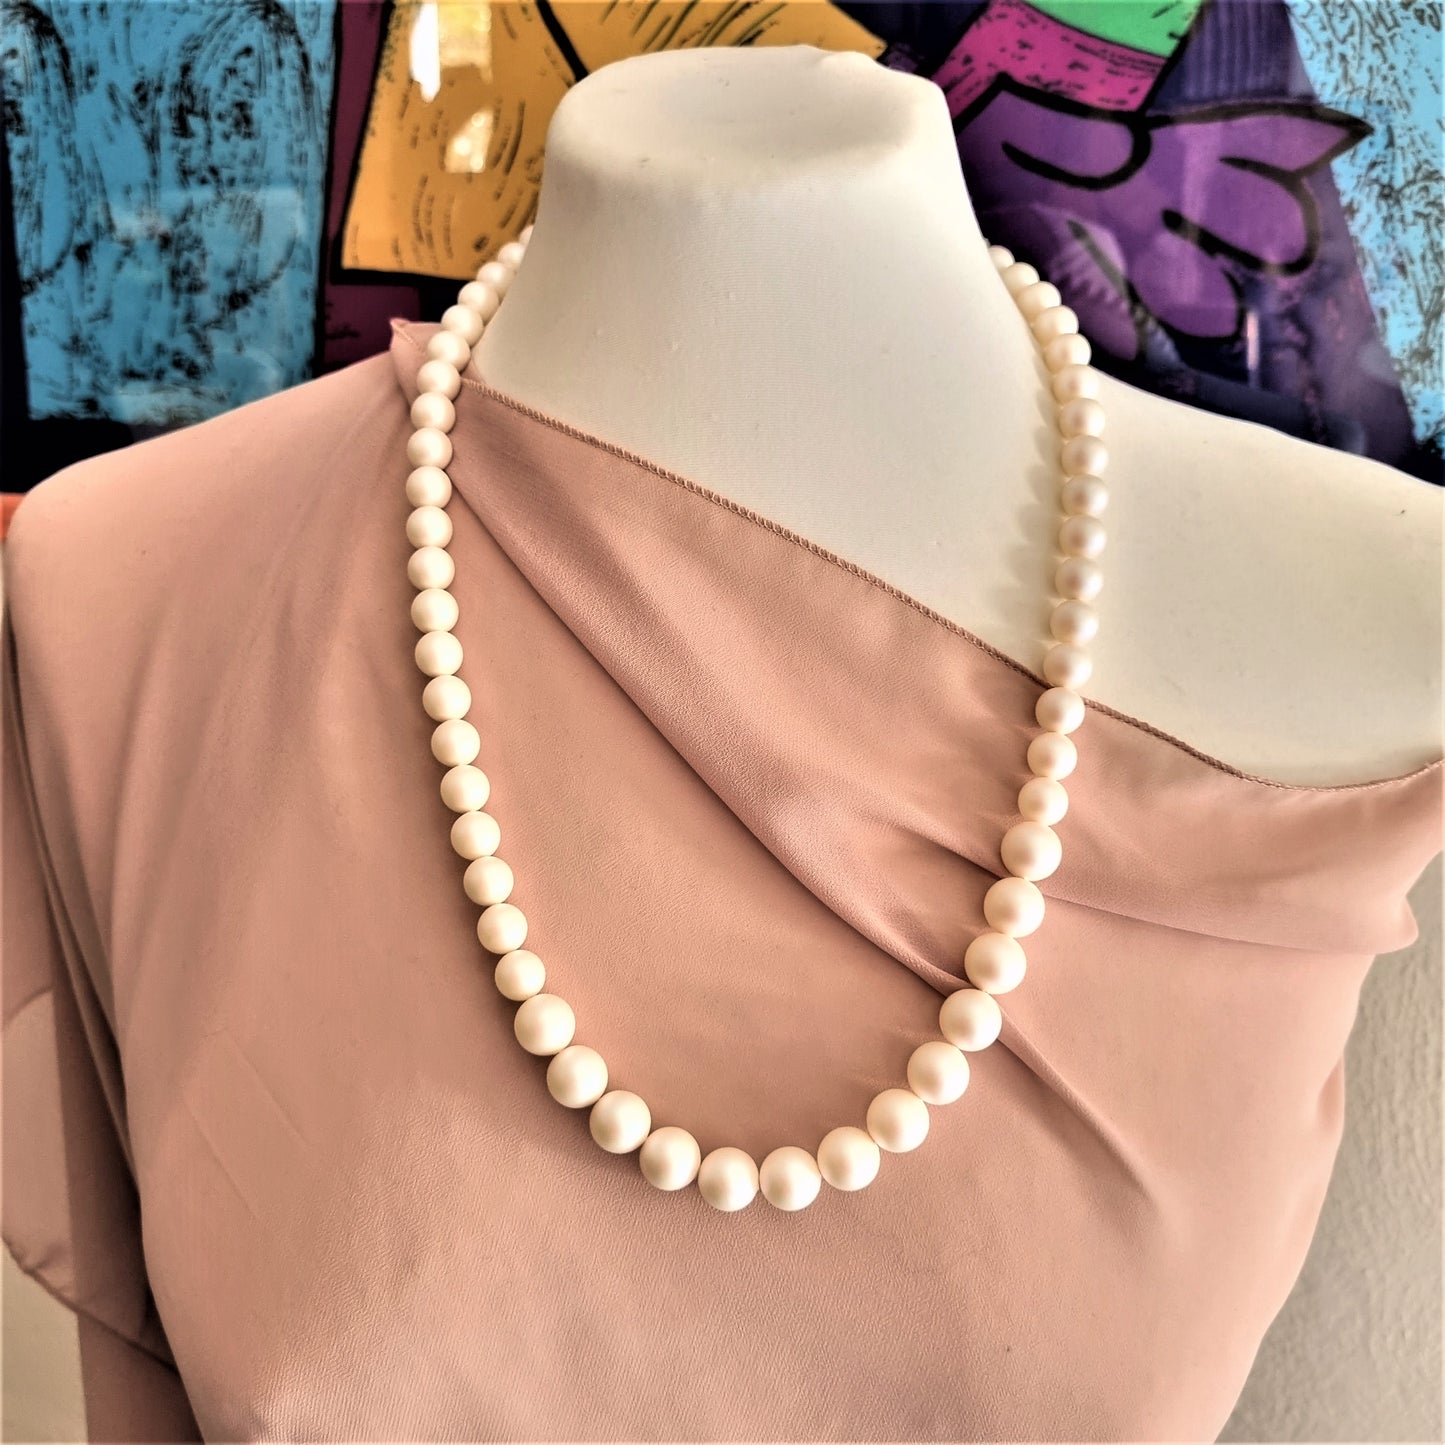 LUXURY Collana .005  perle swarovsky bianco perlato, chiusura metallo rosa e strass.